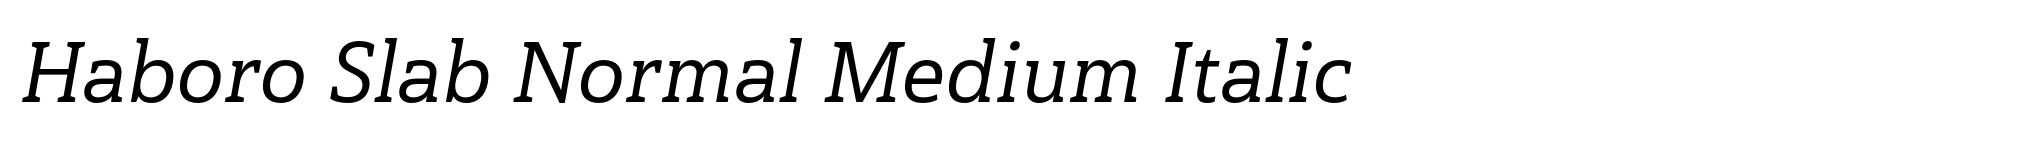 Haboro Slab Normal Medium Italic image